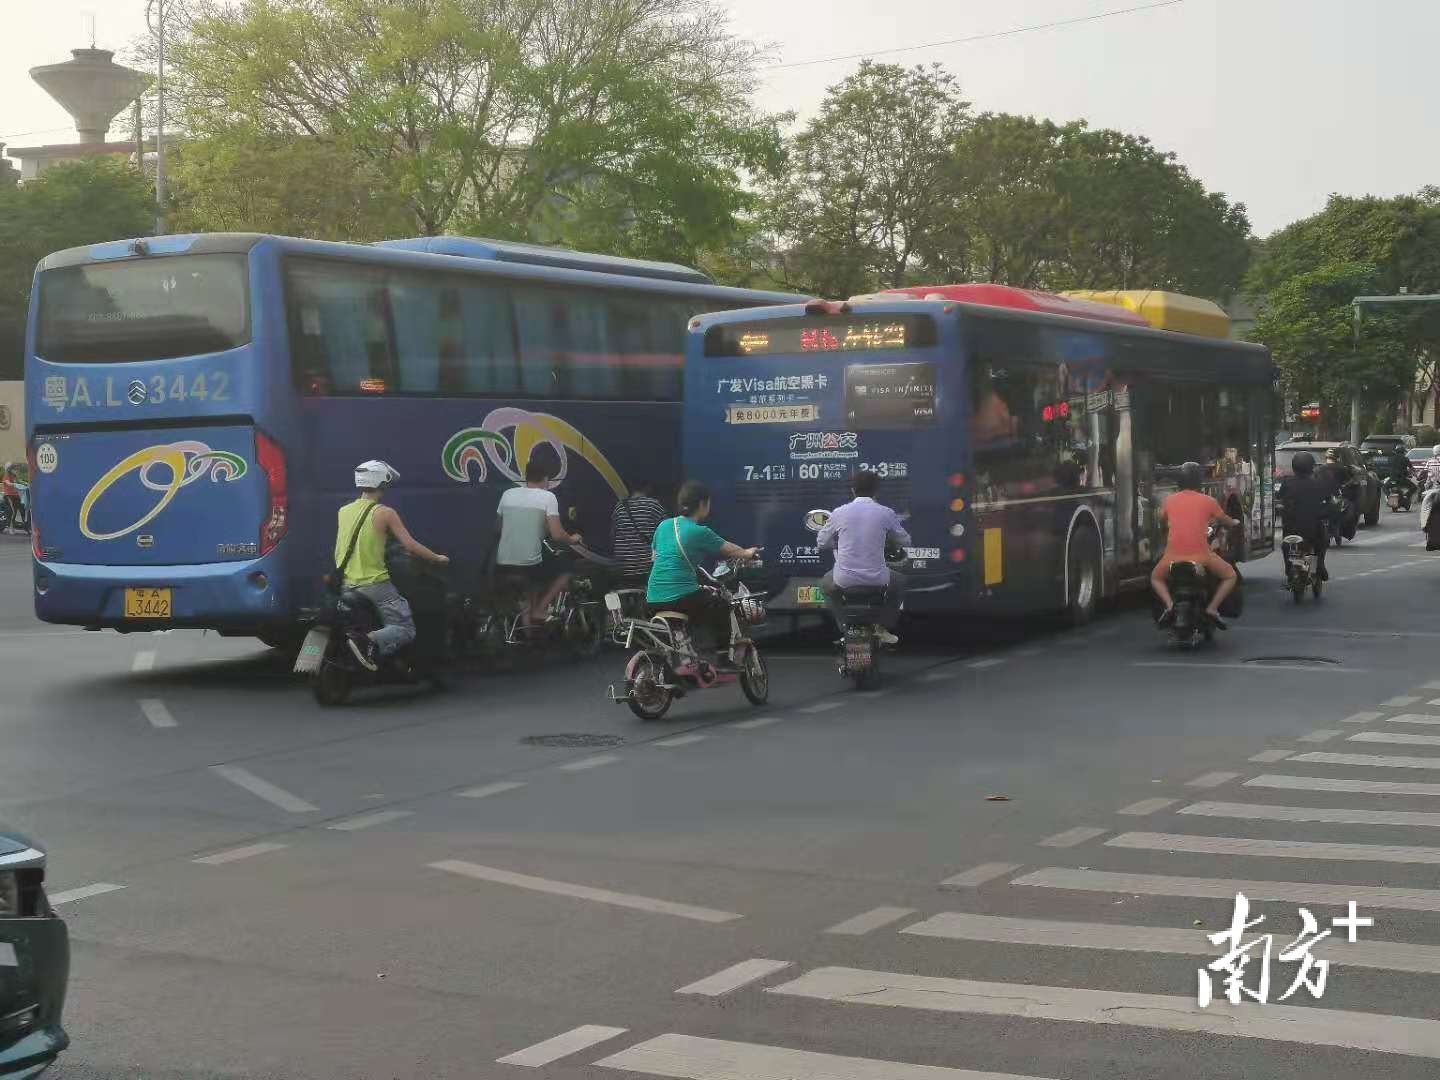 在梅花园地铁站附近，电动车与公交车抢道的场景时常出现。王隽杰摄